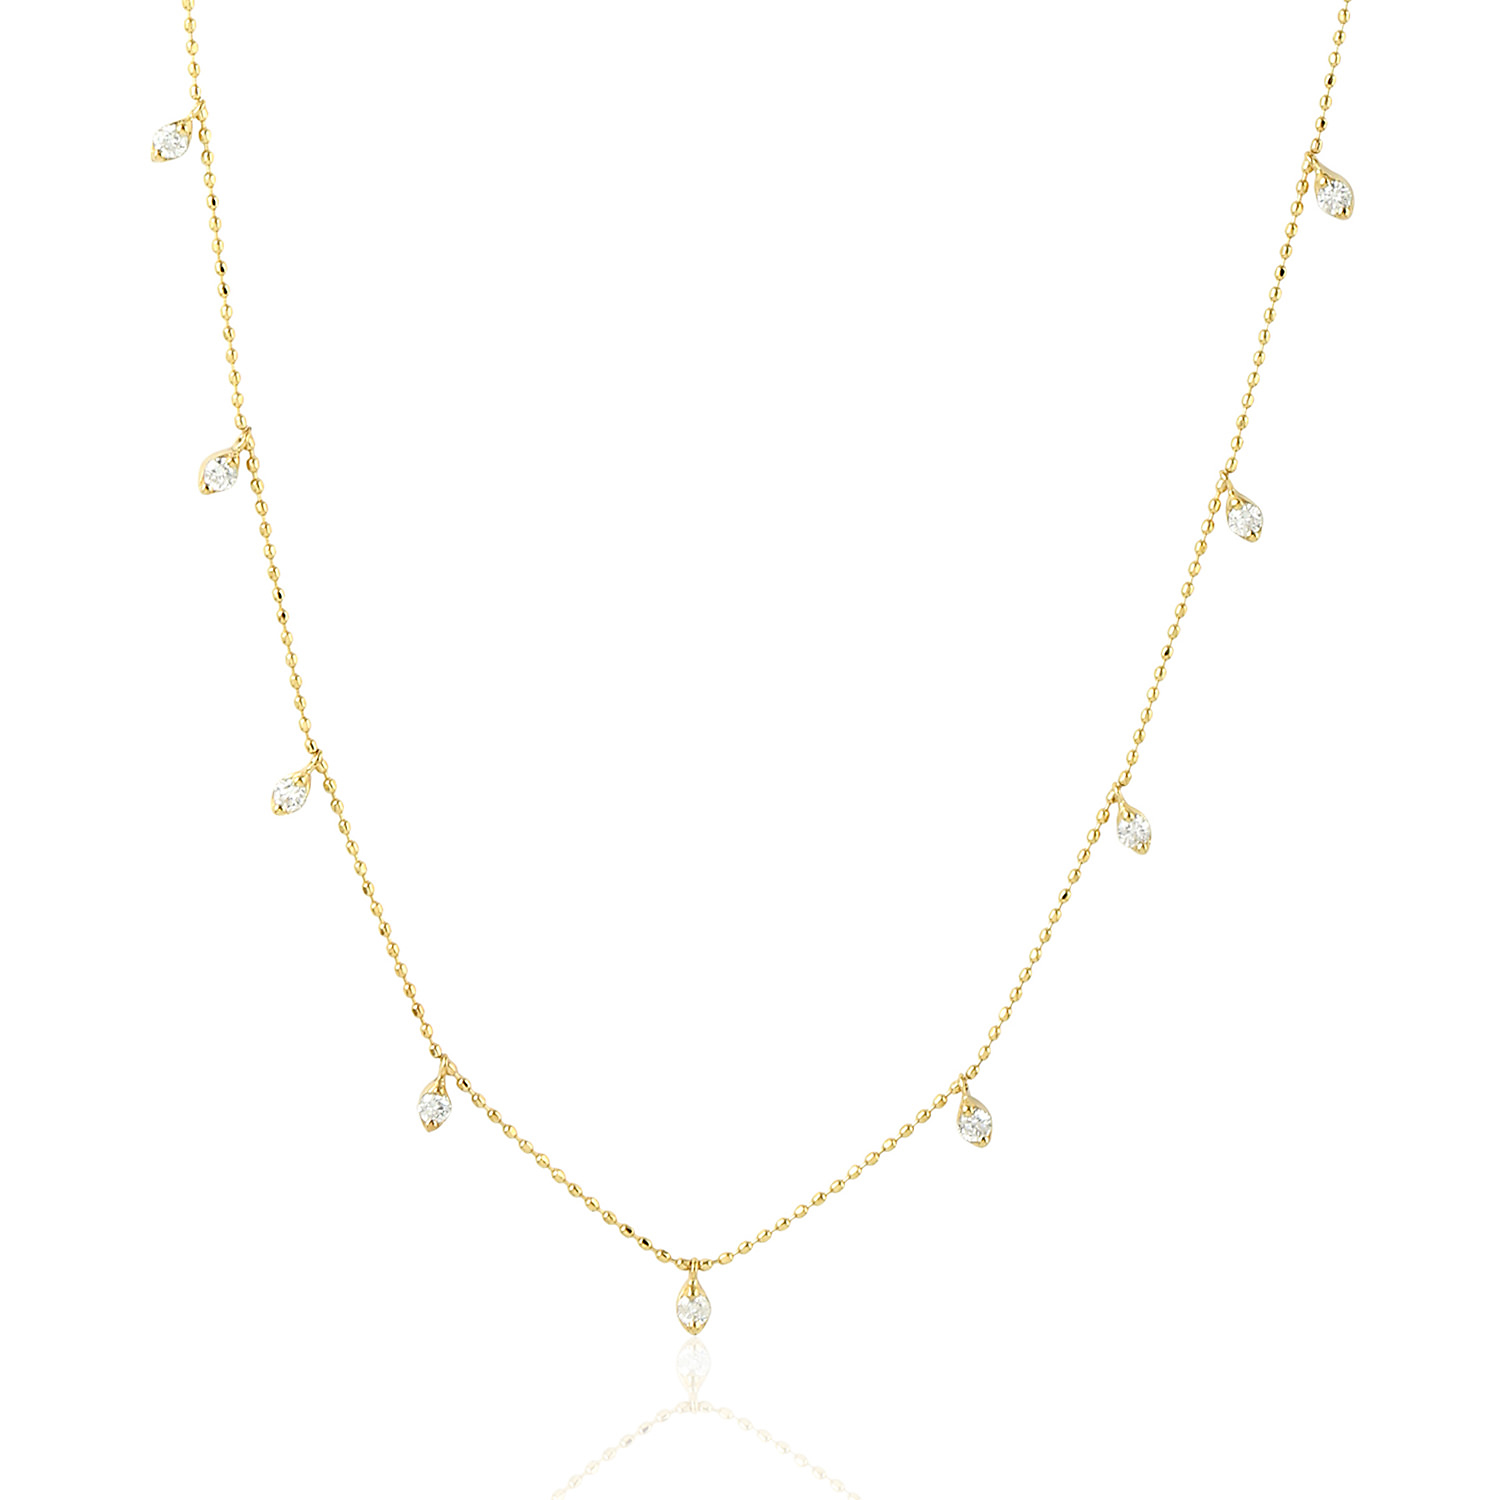 0.47ct Natural Diamond Choker Necklace 18k Yellow Gold Jewelry | eBay